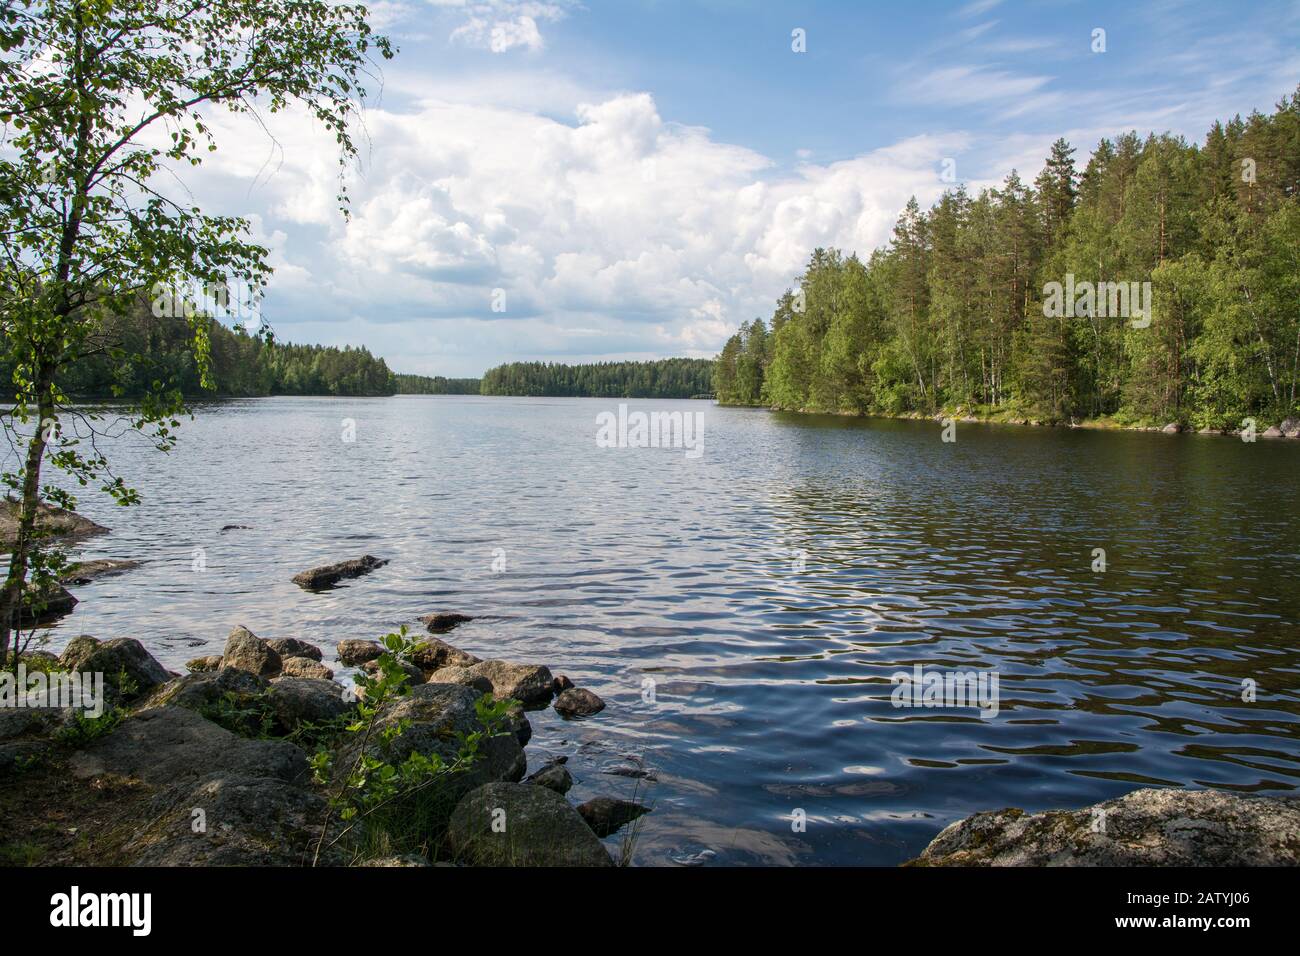 Lago in un parco nazionale in Finlandia. Ottimo posto per nuotare, andare in kayak o andare in canoa. Un posto tranquillo senza persone - lo avete totalmente per voi stessi. Foto Stock